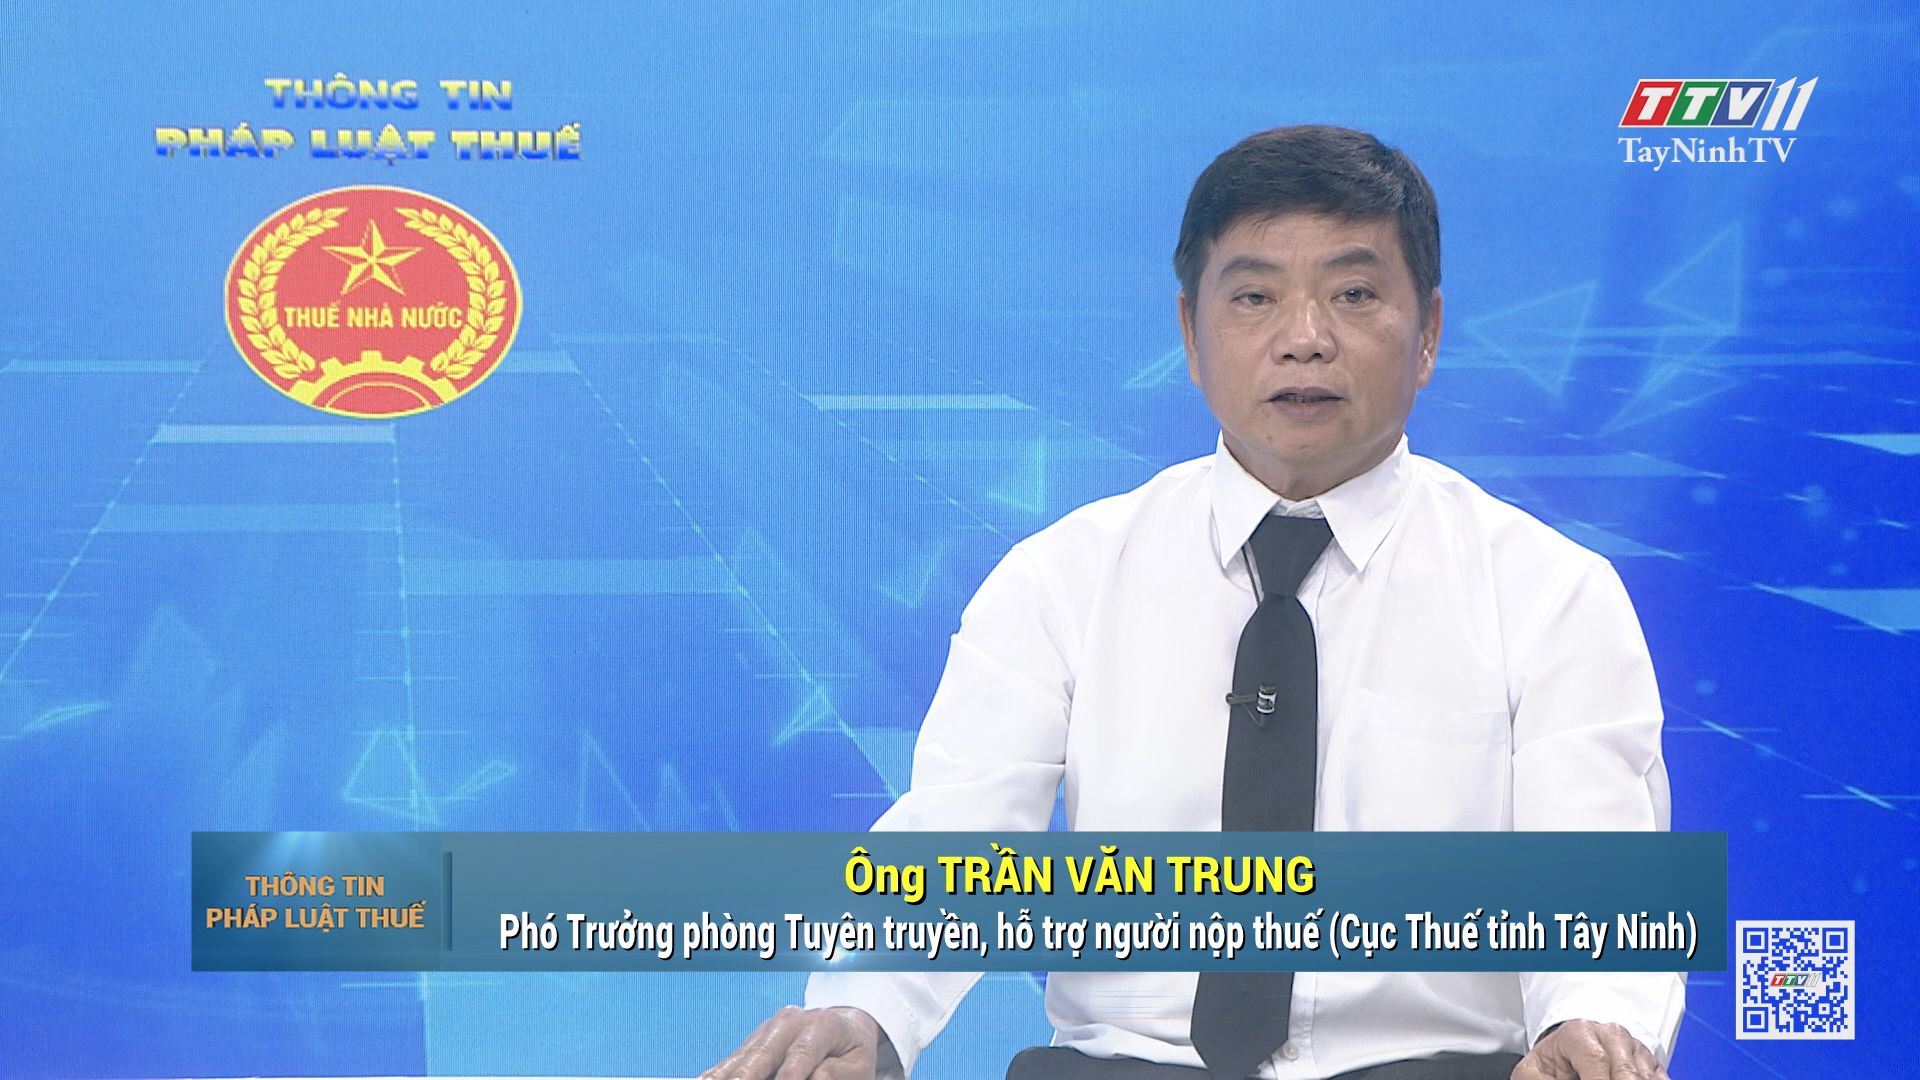 Chương trình “Hóa đơn may mắn” áp dụng trên địa bàn tỉnh Tây Ninh | Thông tin pháp luật thuế | TayNinhTV